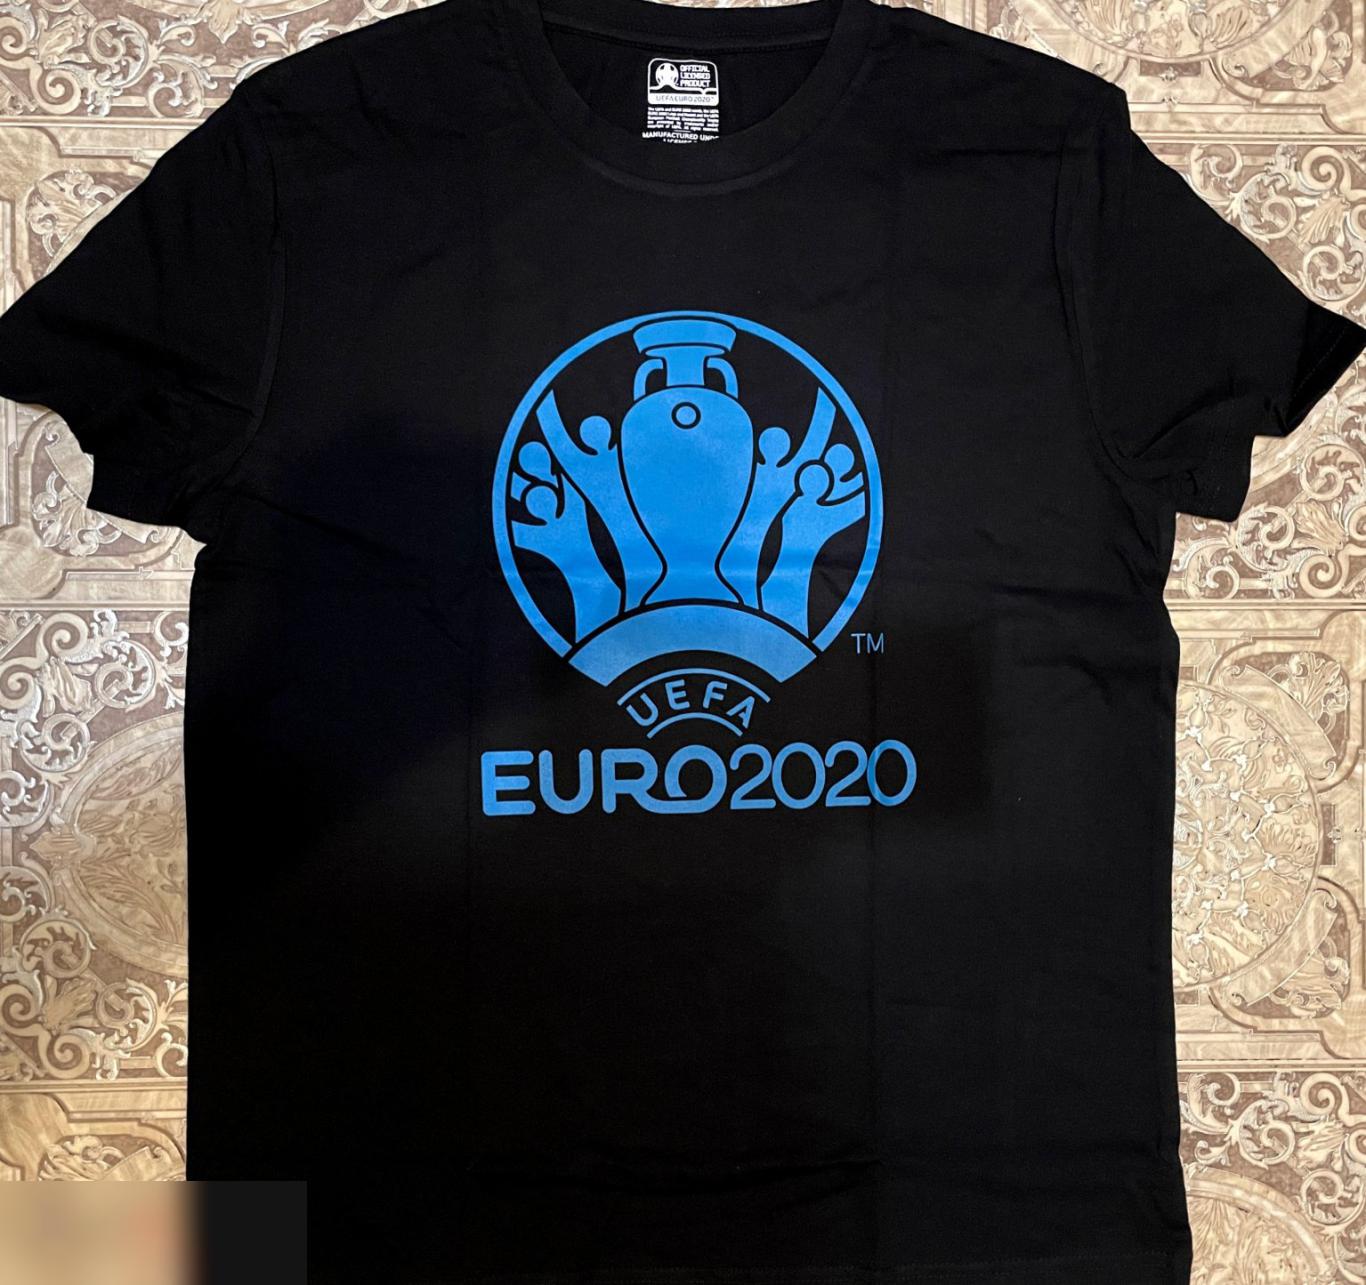 ОПТОВЫЙ ЛОТ! 100 мужских футболок ЕВРО 2020 (S, M). 4